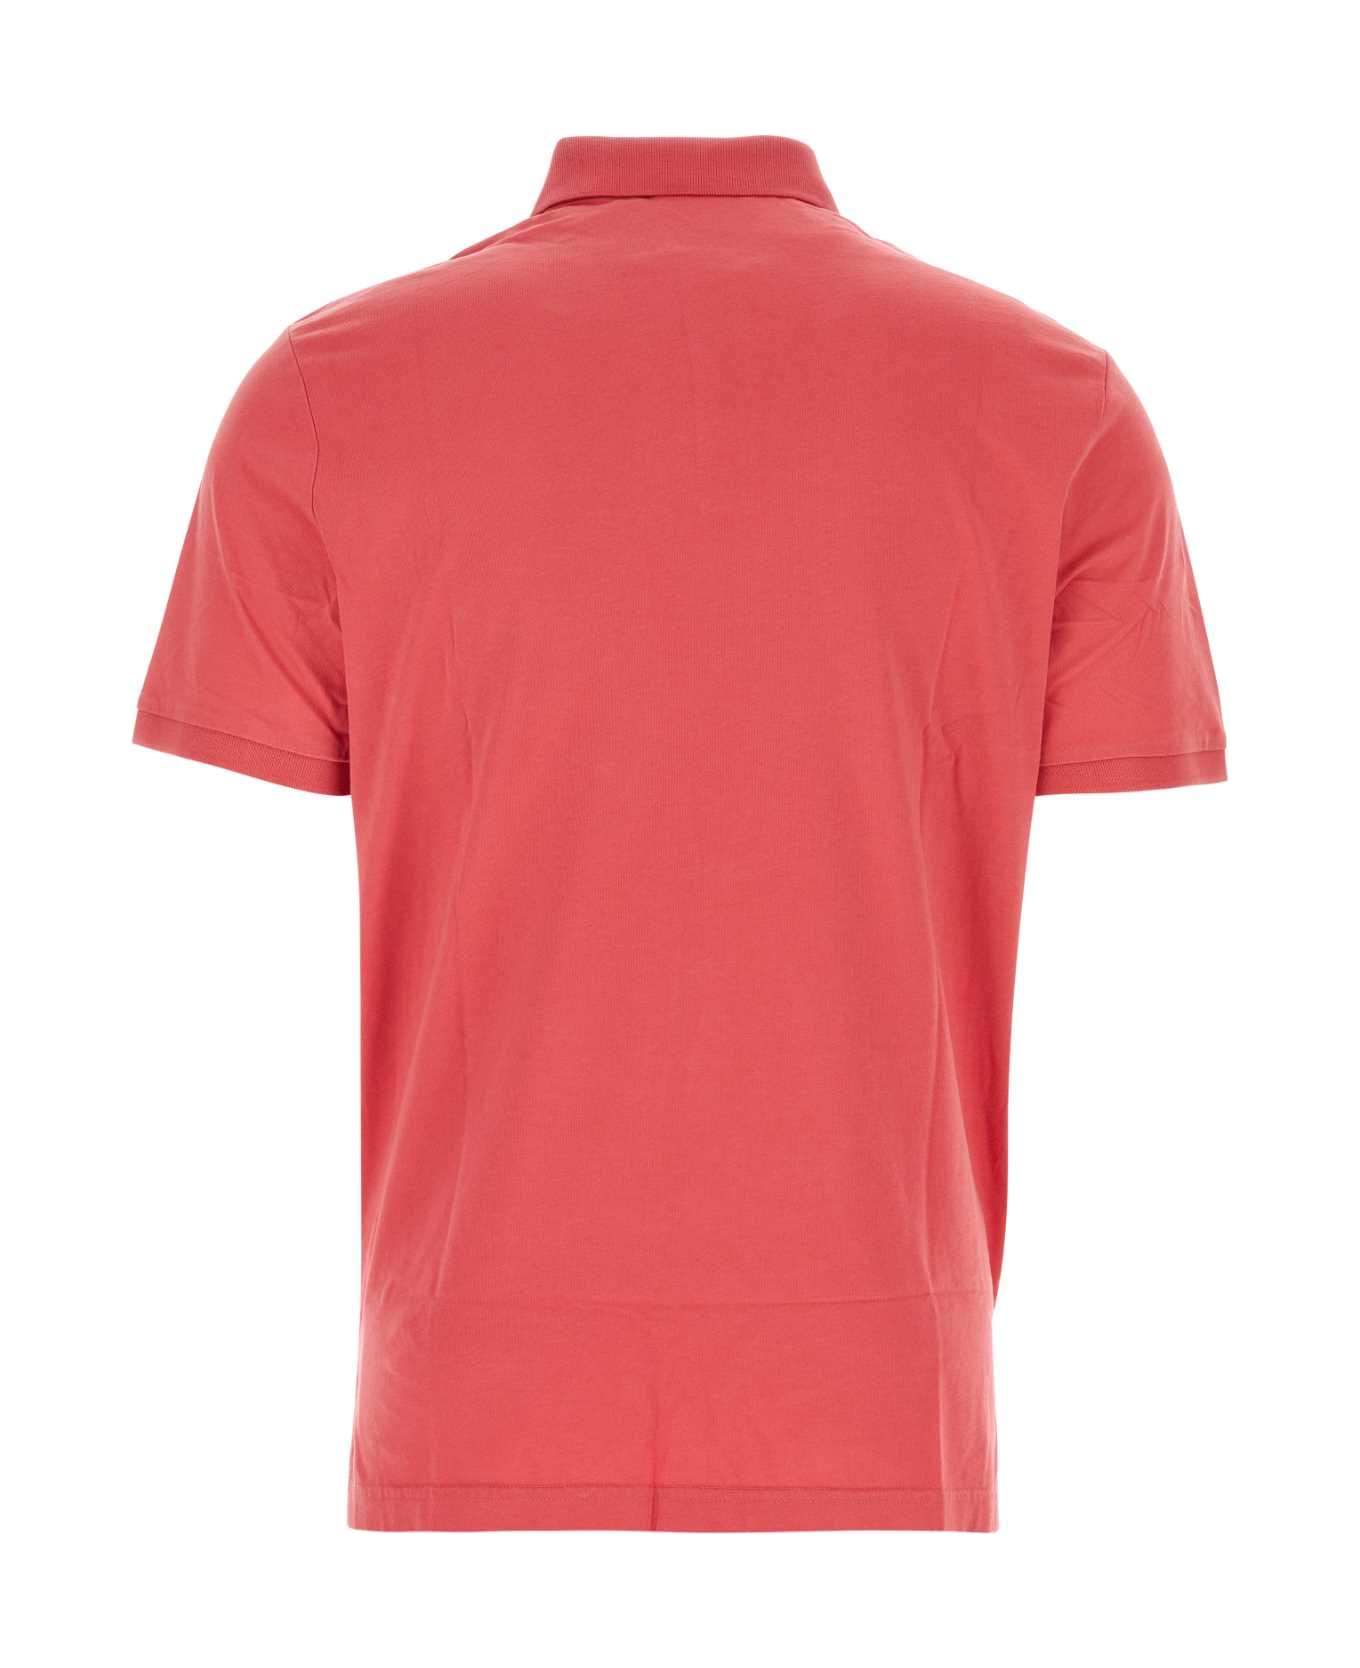 Polo Ralph Lauren Coral Cotton Polo Shirt - ADIRONDACKBERRY